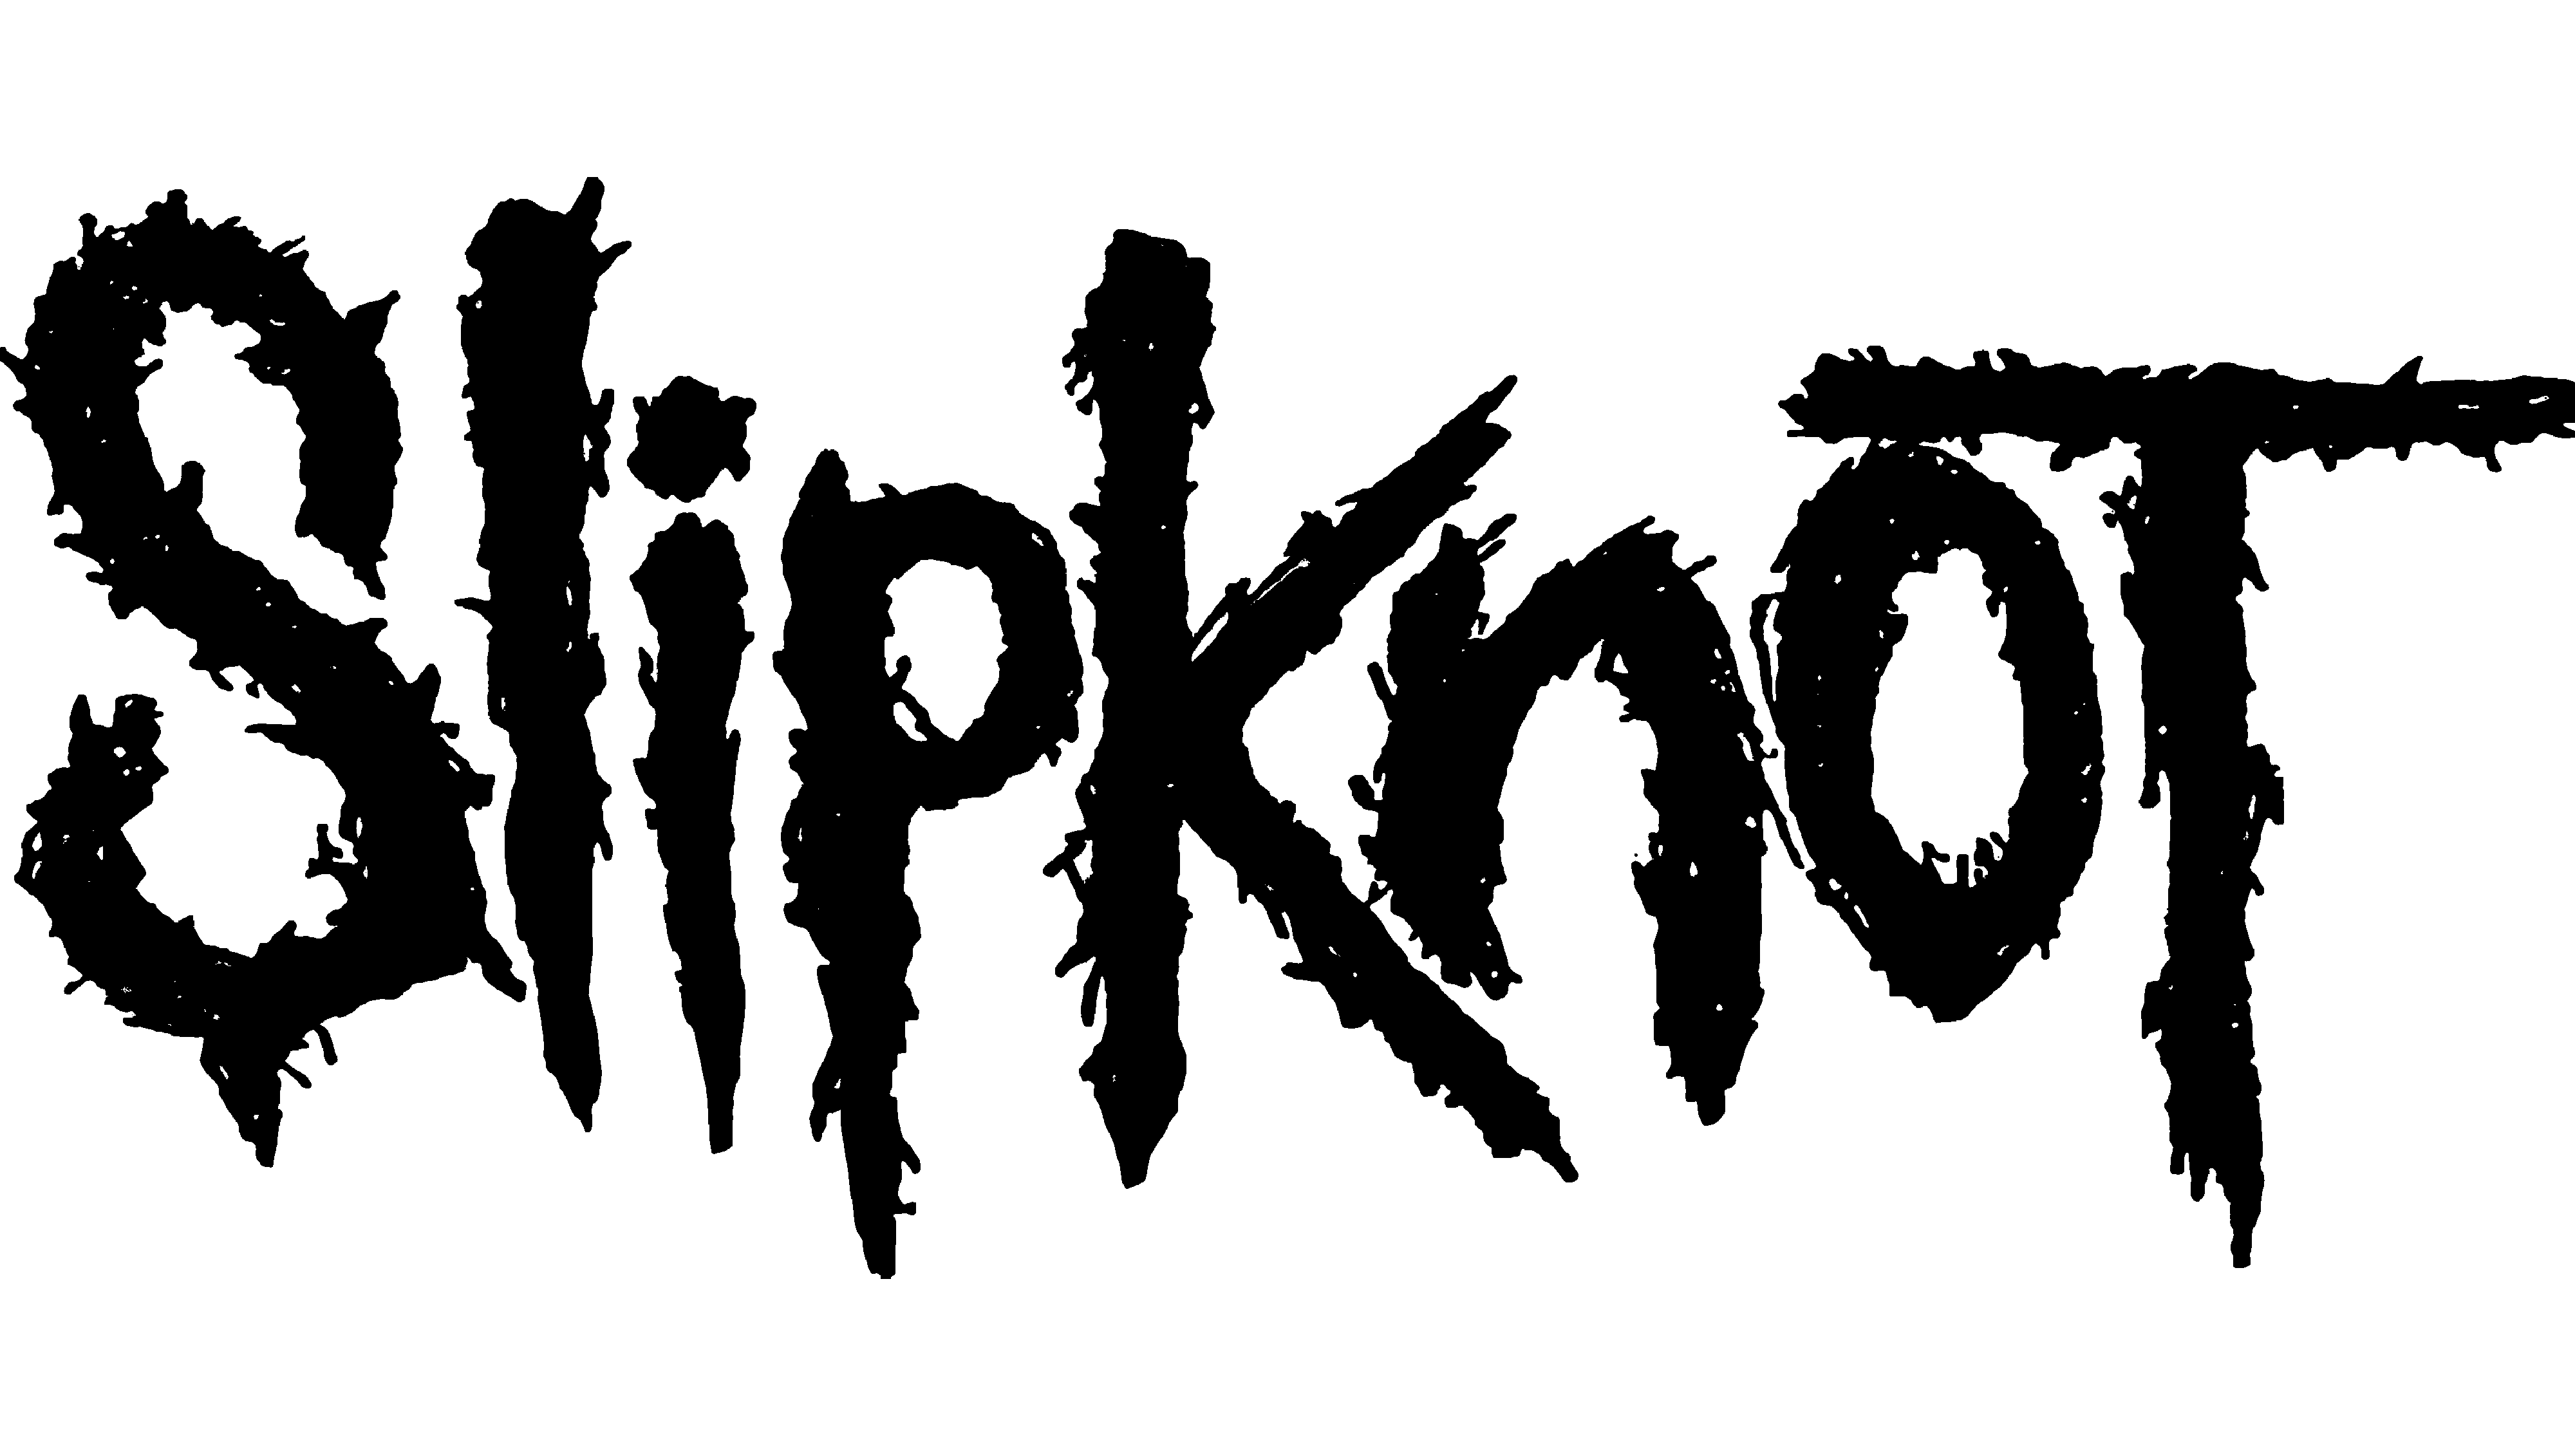 Slipknot Logo PNG Pic